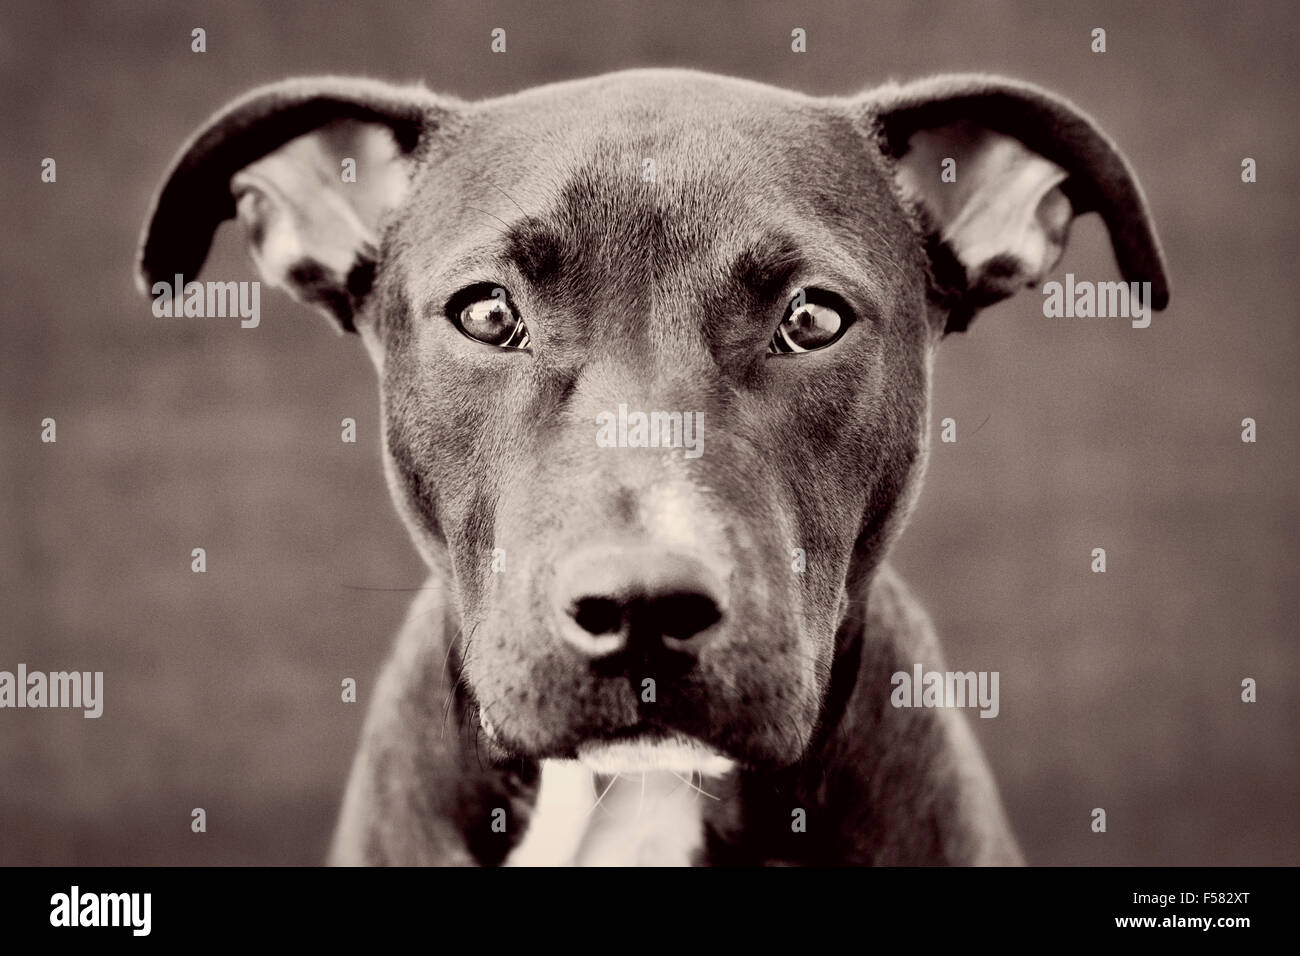 Accattivante bianco e nero virati headshot Ritratto di giovane nero Pitbull cucciolo di cane guardando direttamente nella fotocamera Foto Stock